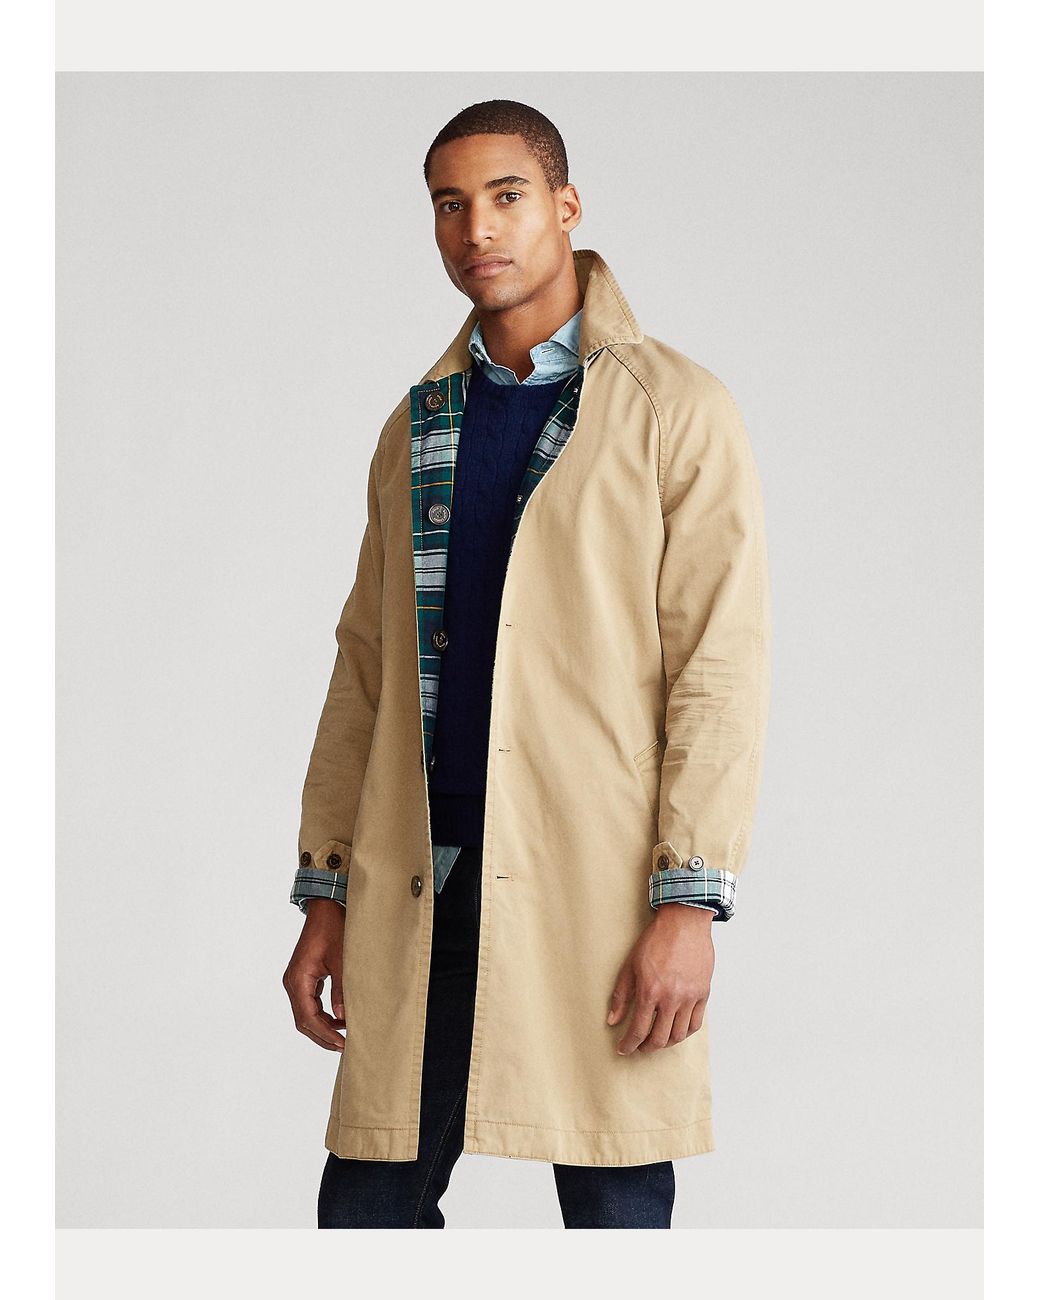 Hommes Vêtements Manteaux & vestes Manteaux Trenchs Ralph Lauren Trenchs Polo Ralph Lauren Camo Walking Coat 